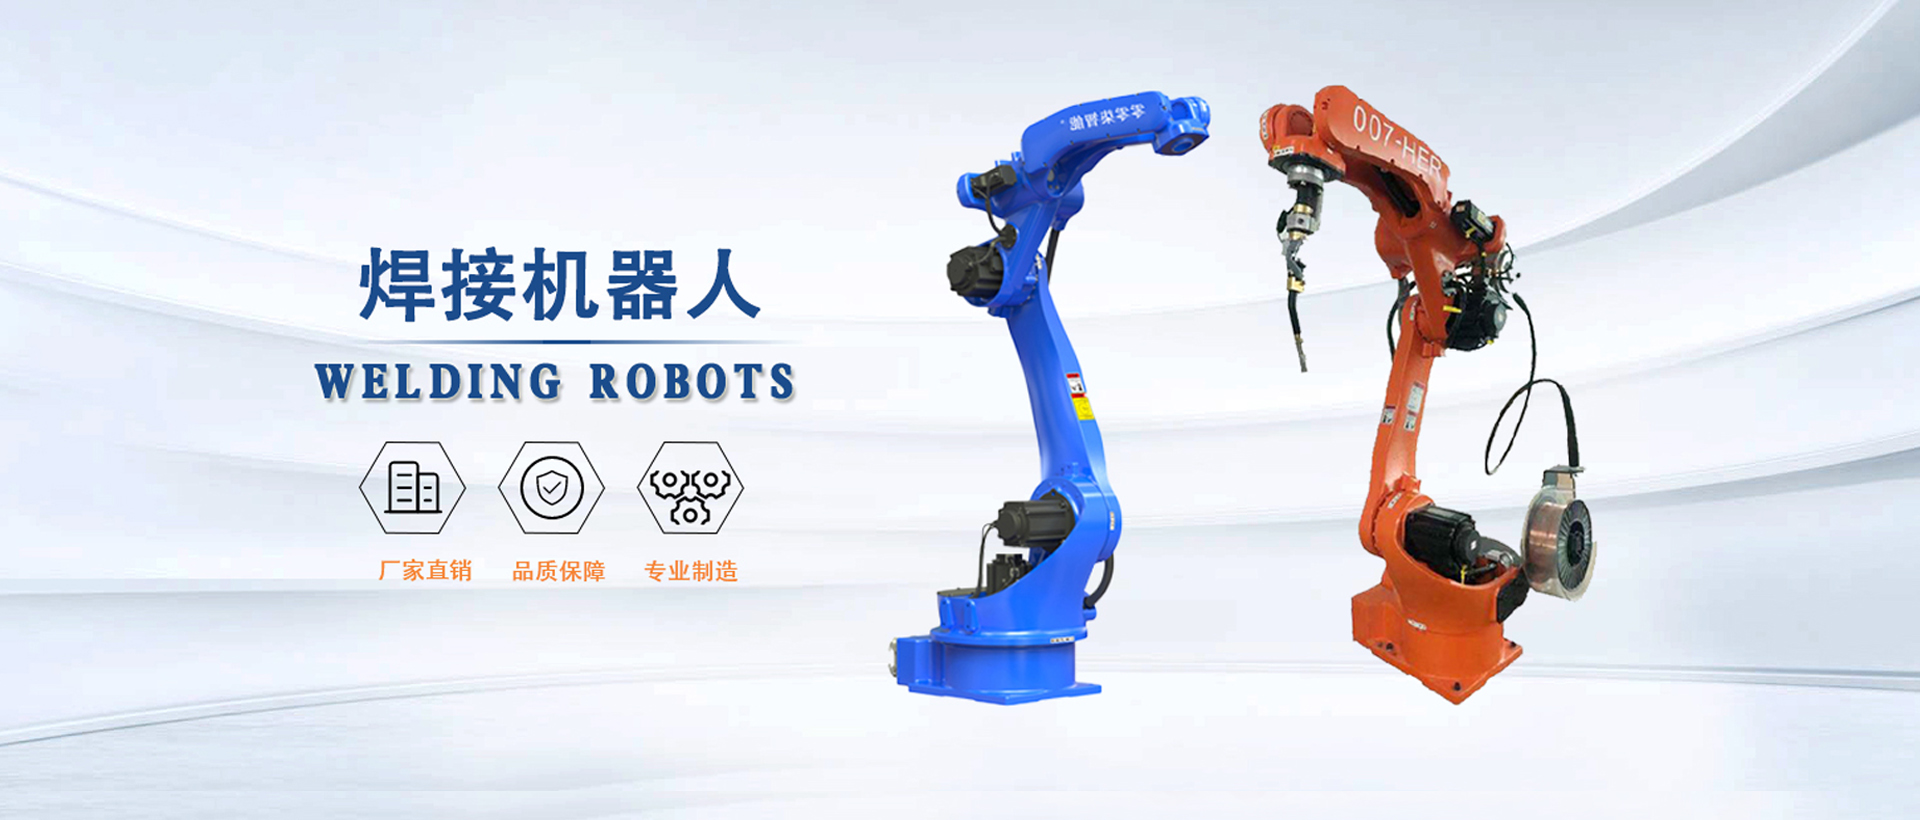 卡诺普机器人,机器人焊接